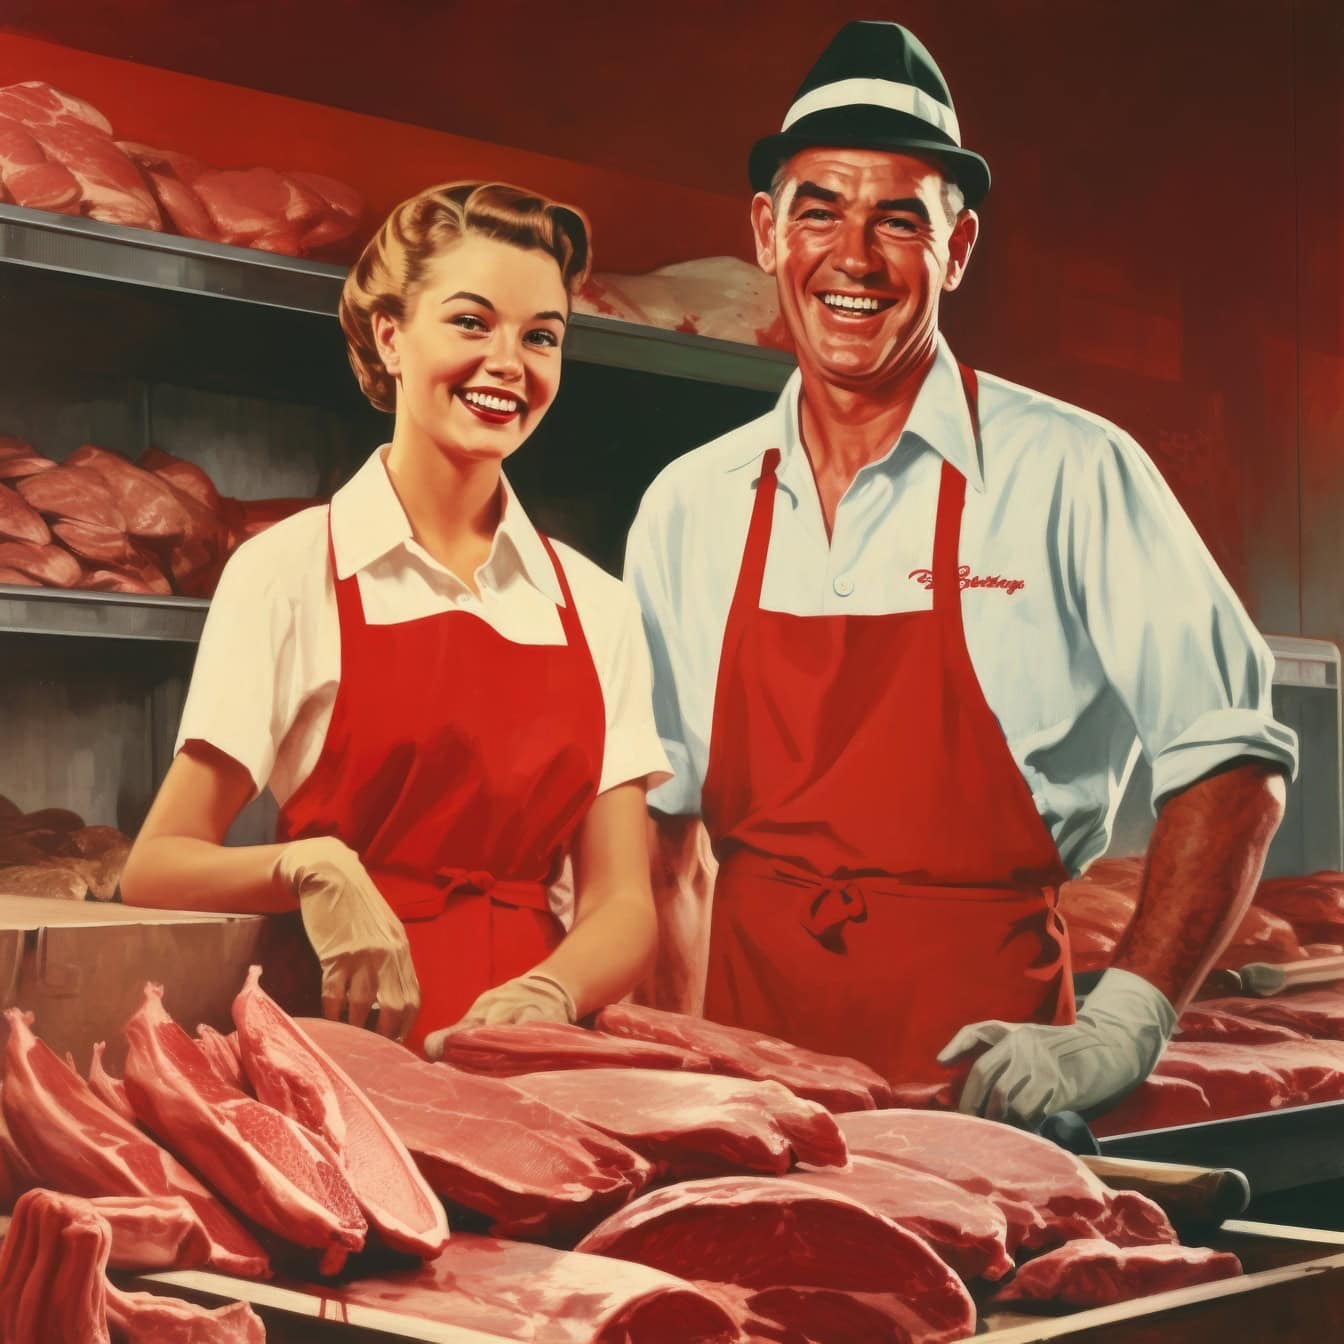 Seorang tukang daging dan seorang wanita berdiri di toko daging, sebuah ilustrasi dengan gaya tahun 1970-an,